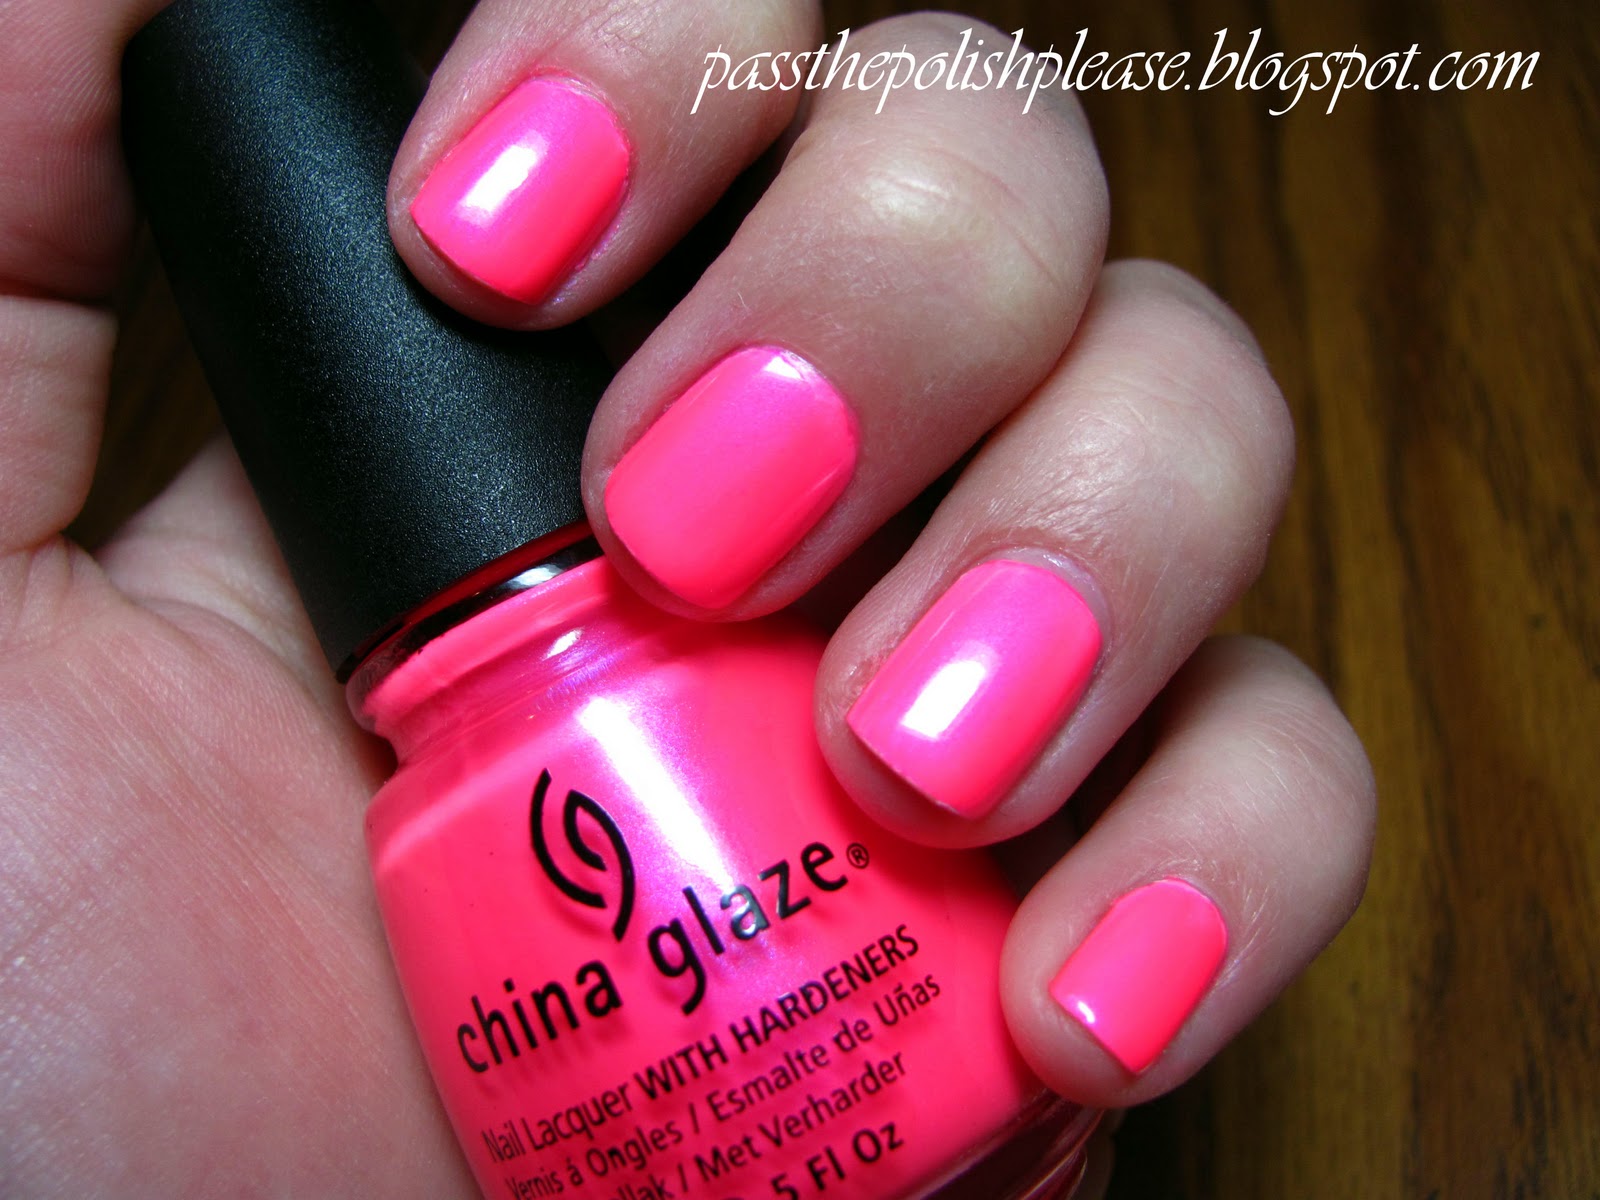 China Glaze Pink Voltage - wide 9